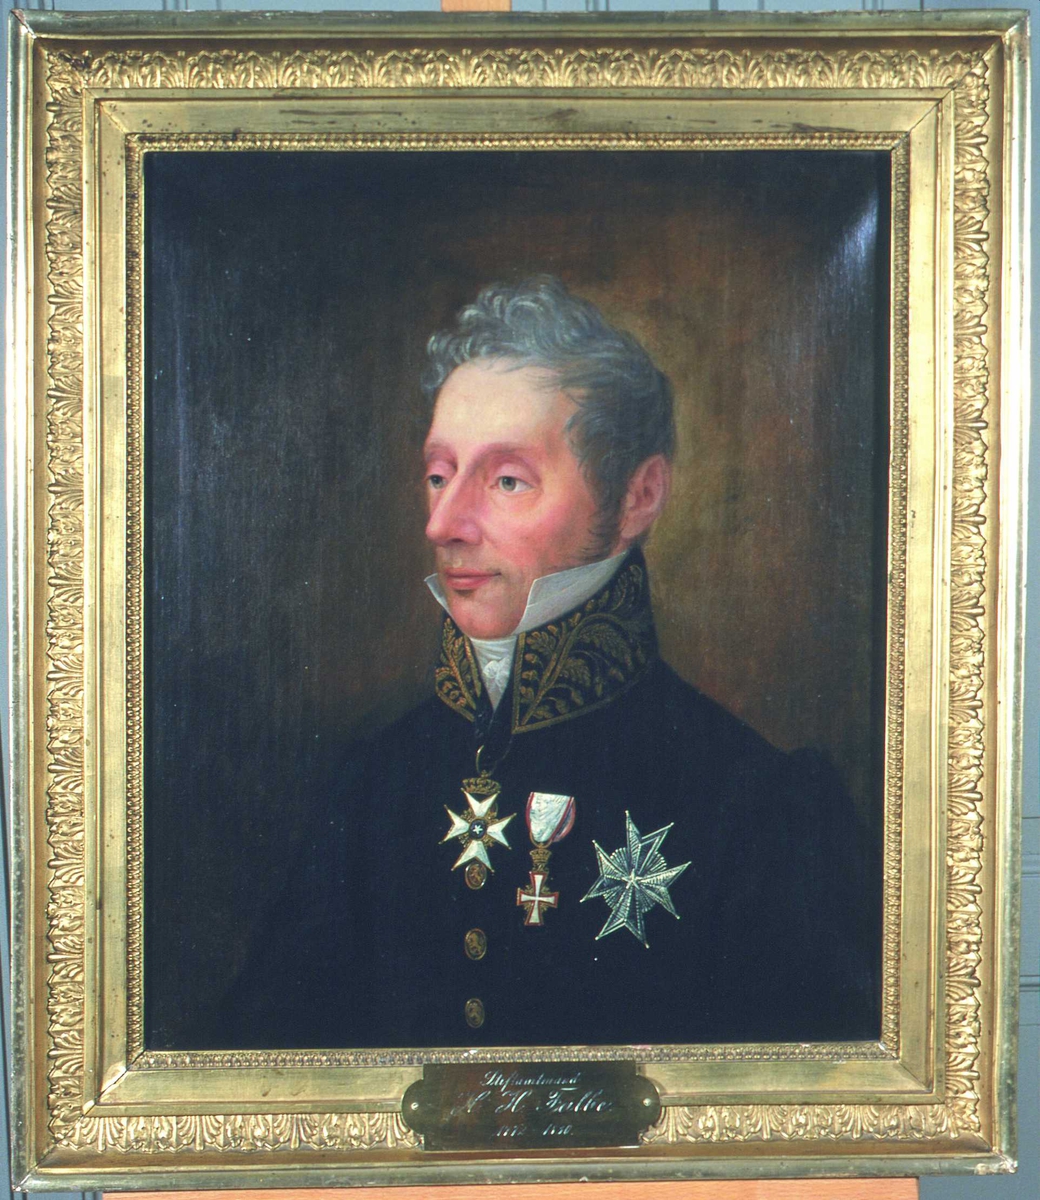 Portrett av H H Falbe. Kort grått hår, mørk uniform m/brodert krave. Tre ordner på brystet. Embetsmannsuniform, antagelig amtmannsuniform, etter 1815.